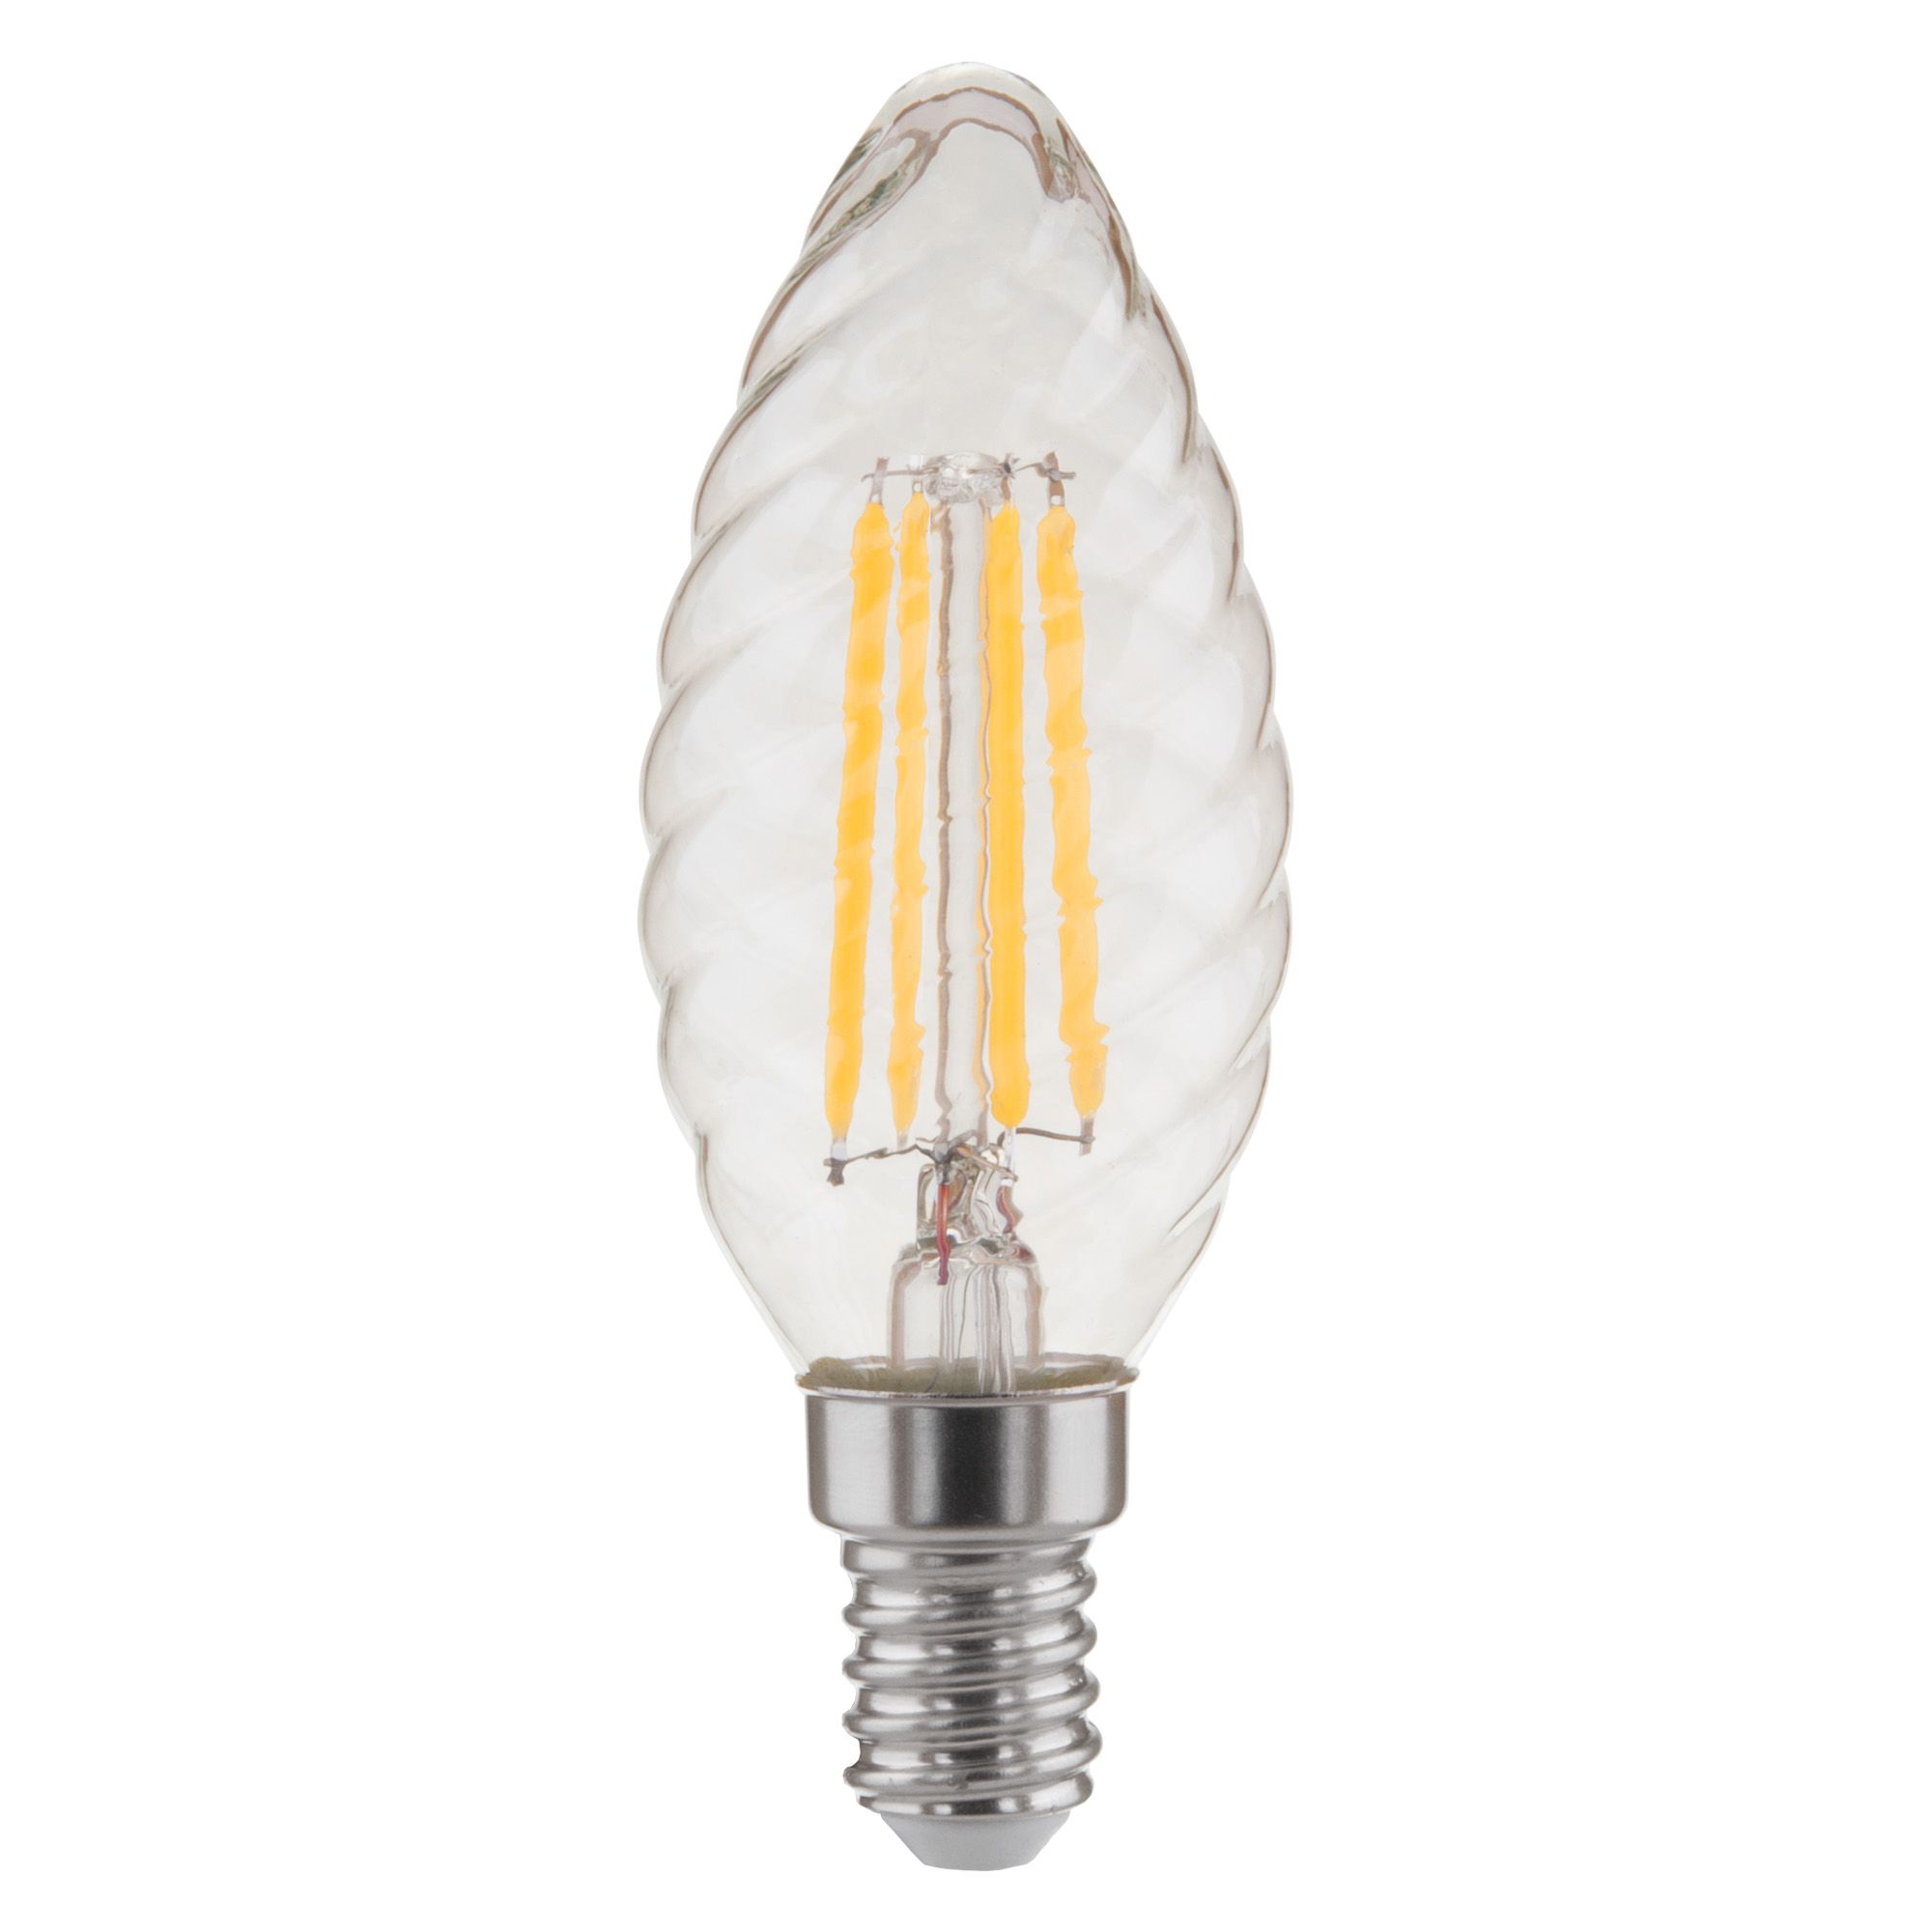 Филаментная лампа "Свеча витая" 7&nbsp;Вт 4200K E14 Elektrostandard Свеча витая F BL129. Фото 2